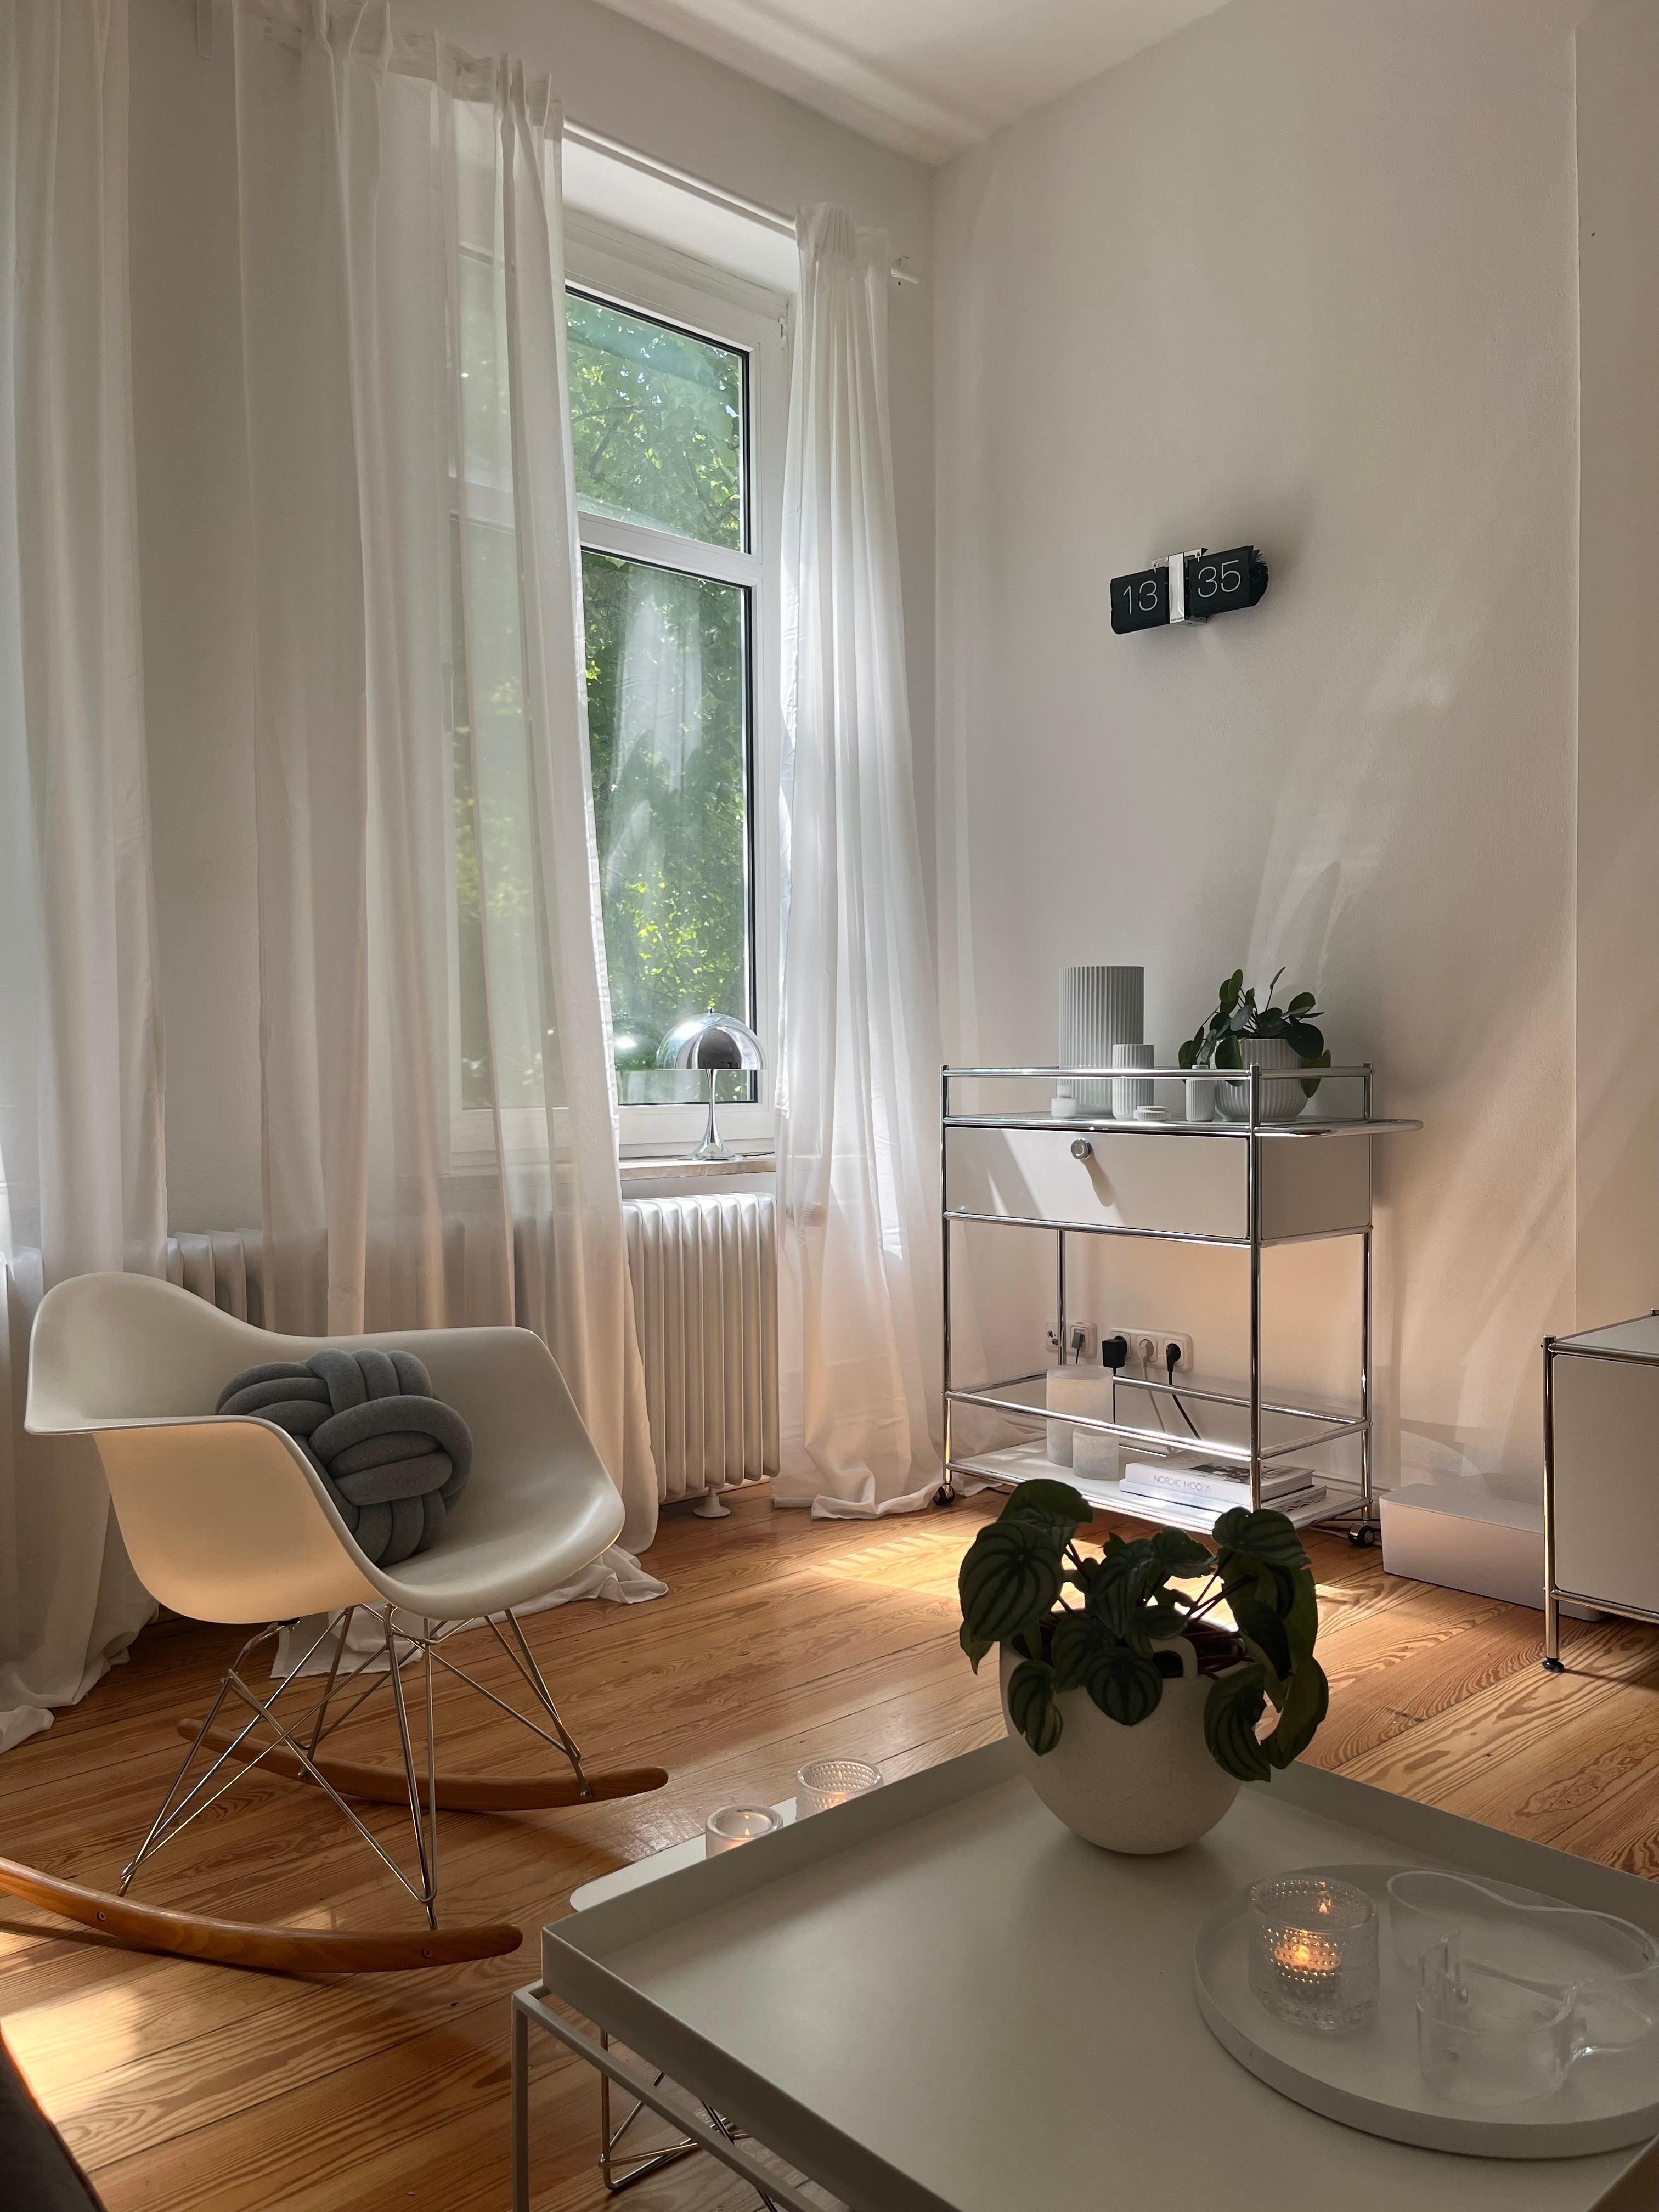 #wohnzimmer #inneneinrichtung #einrichtungsideen #altbauwohnung #skandinavischwohnen